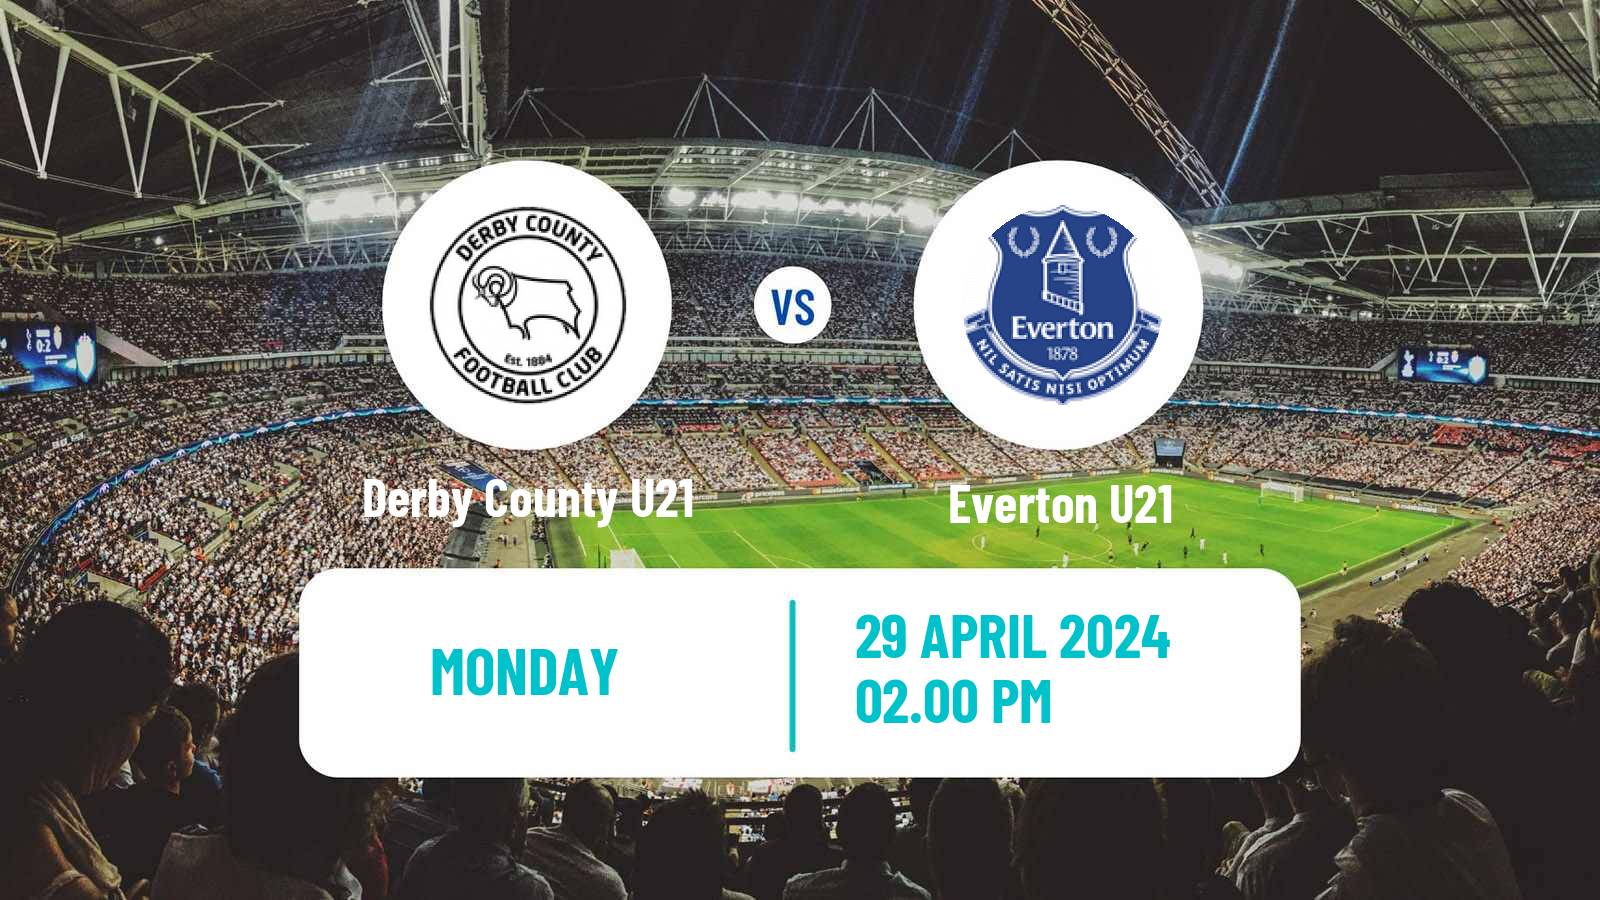 Soccer English Premier League 2 Derby County U21 - Everton U21